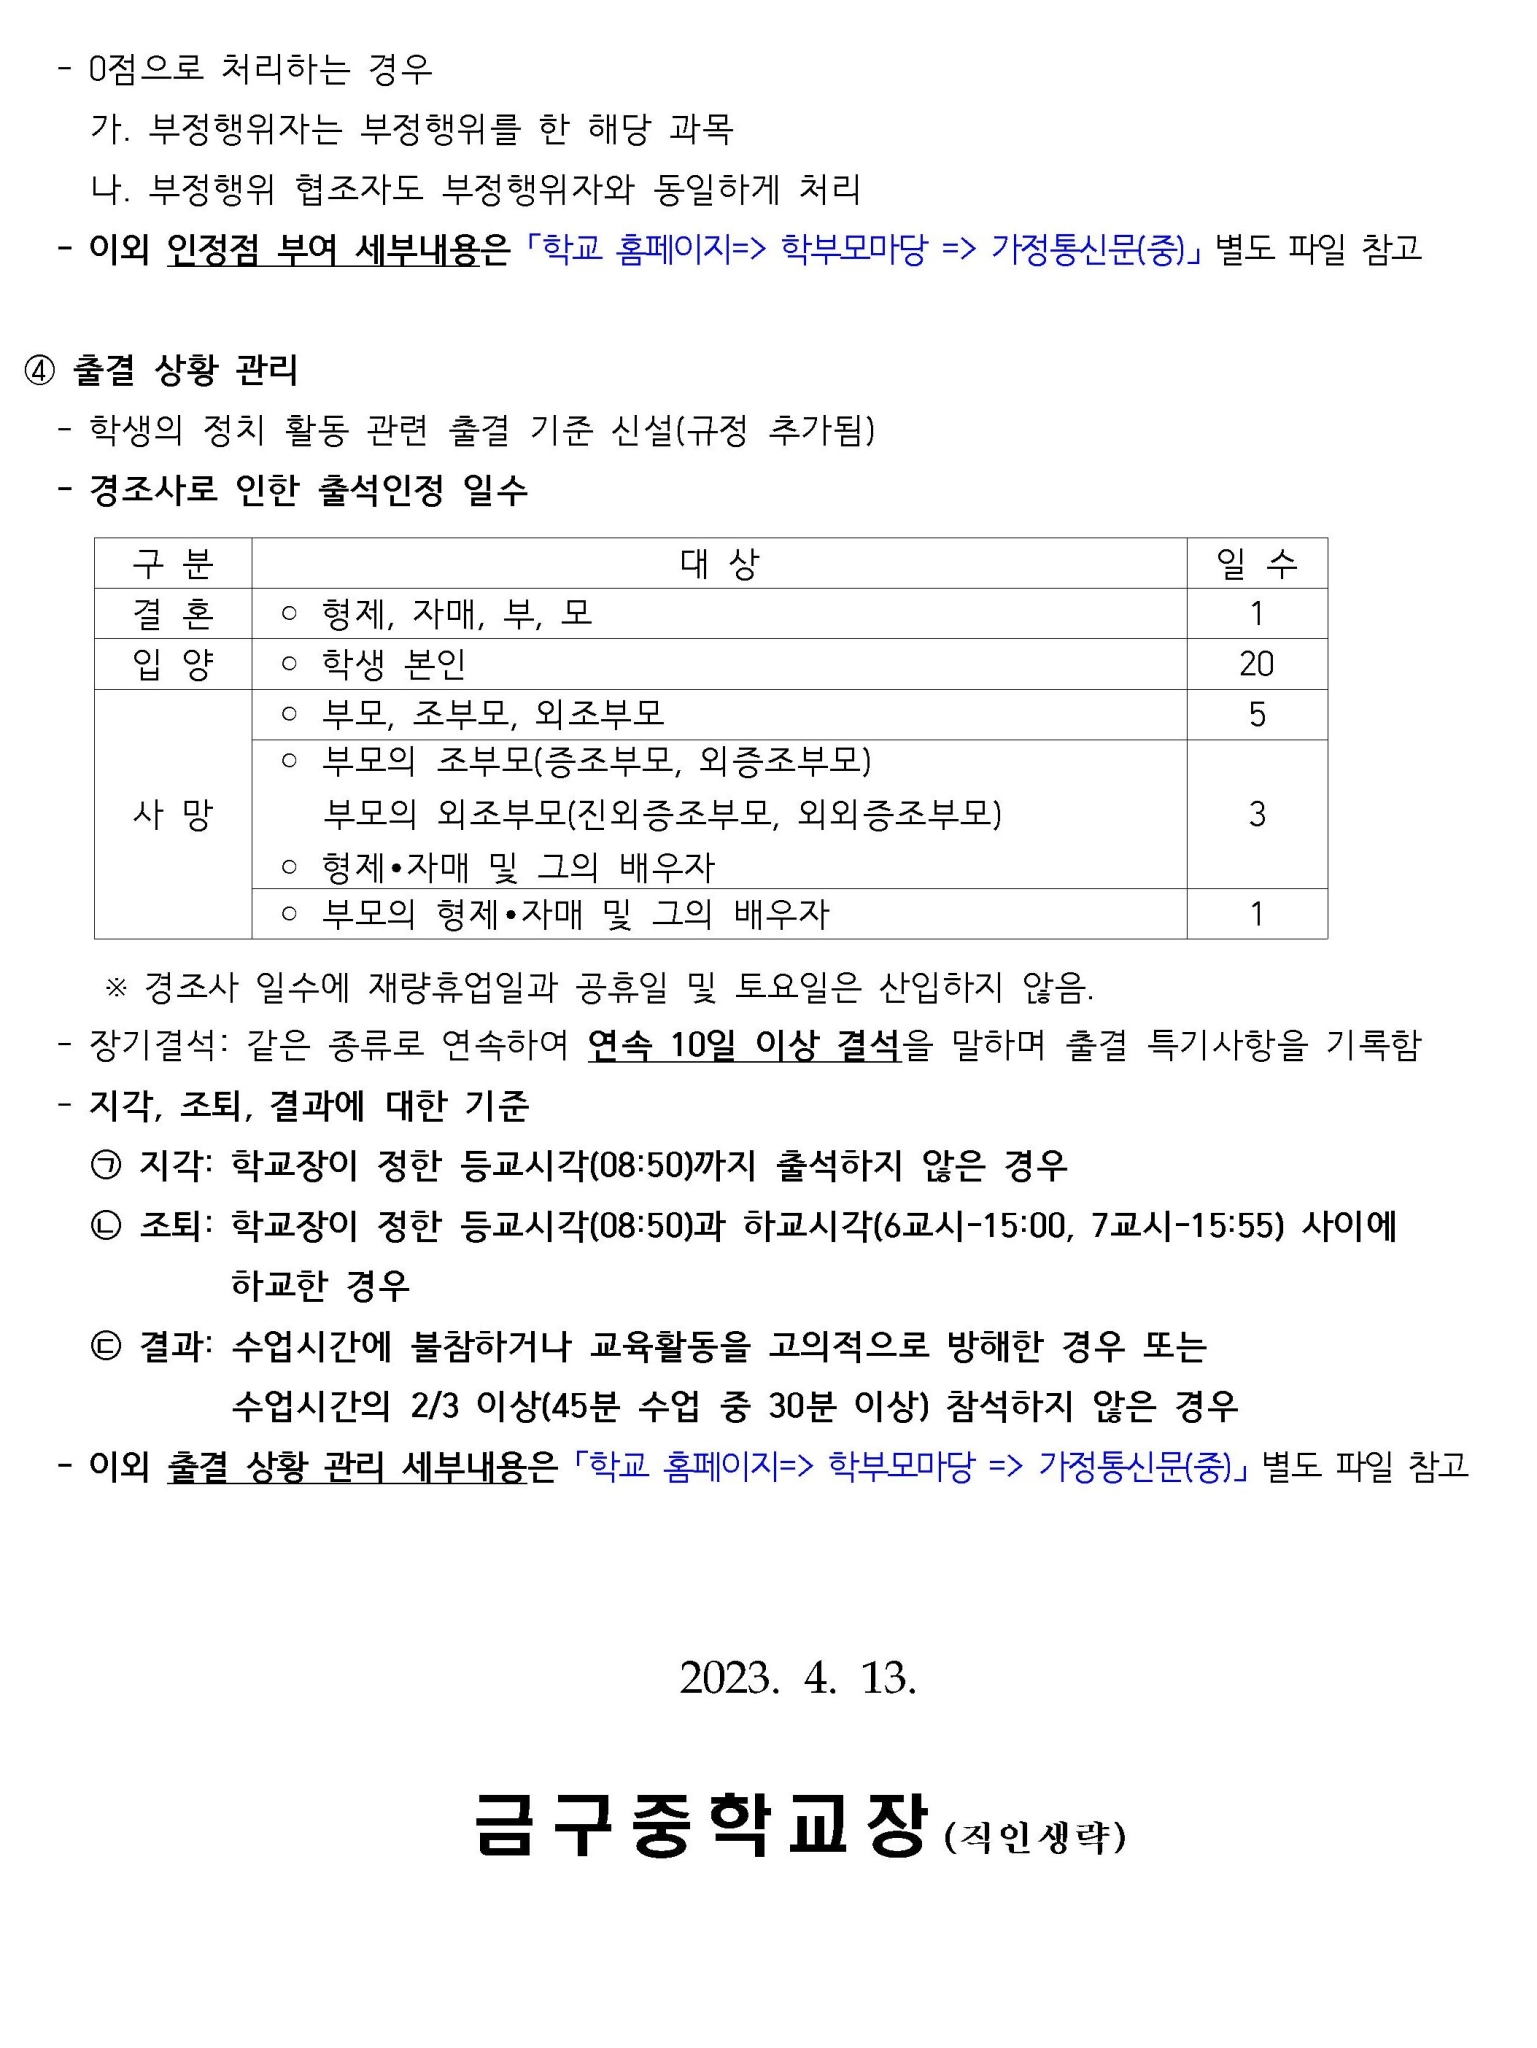 2023 금구중 학업성적관리규정 안내(가정통신문)002